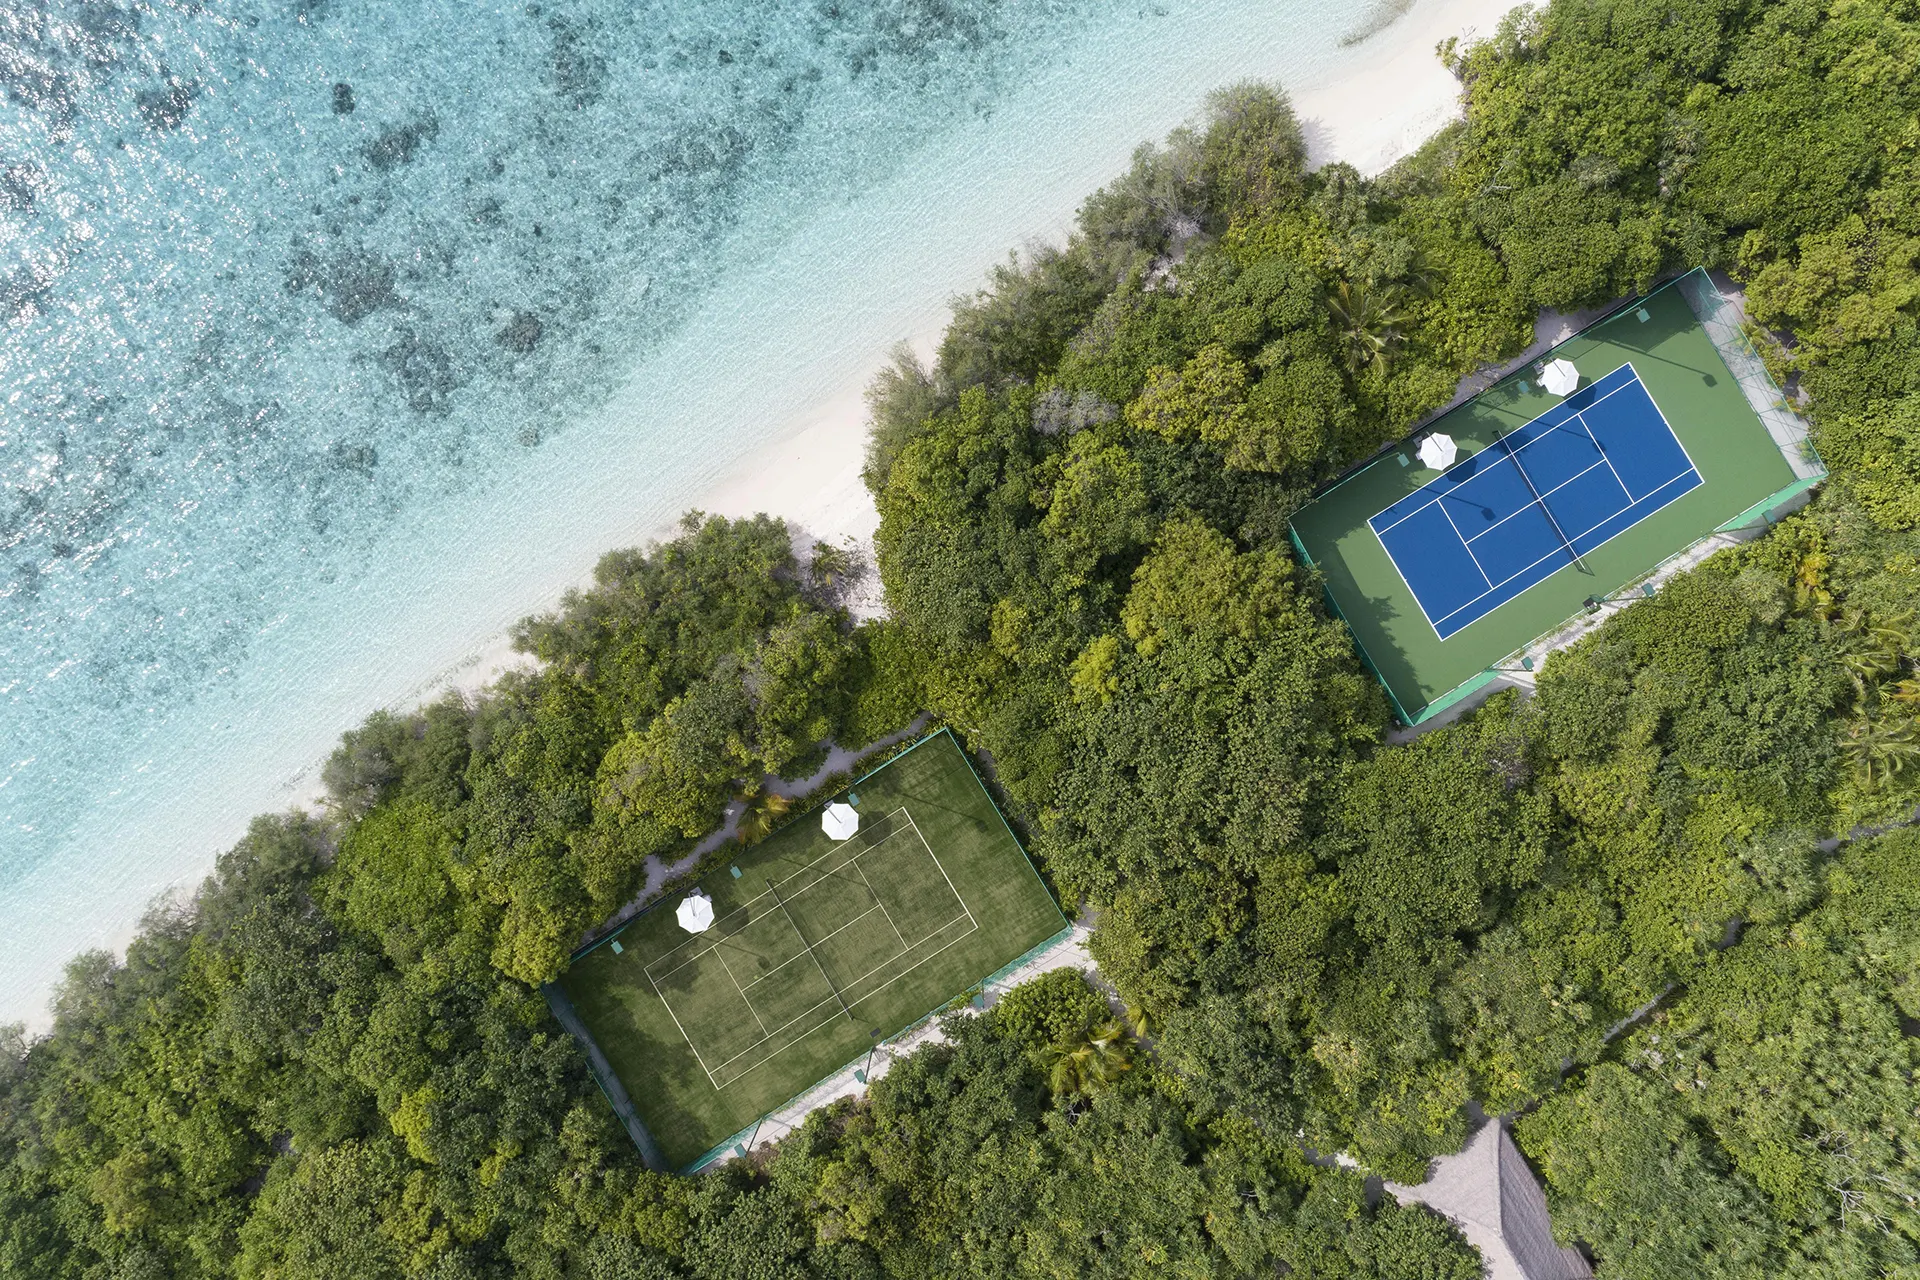 Tennisplätze von oben fotografiert